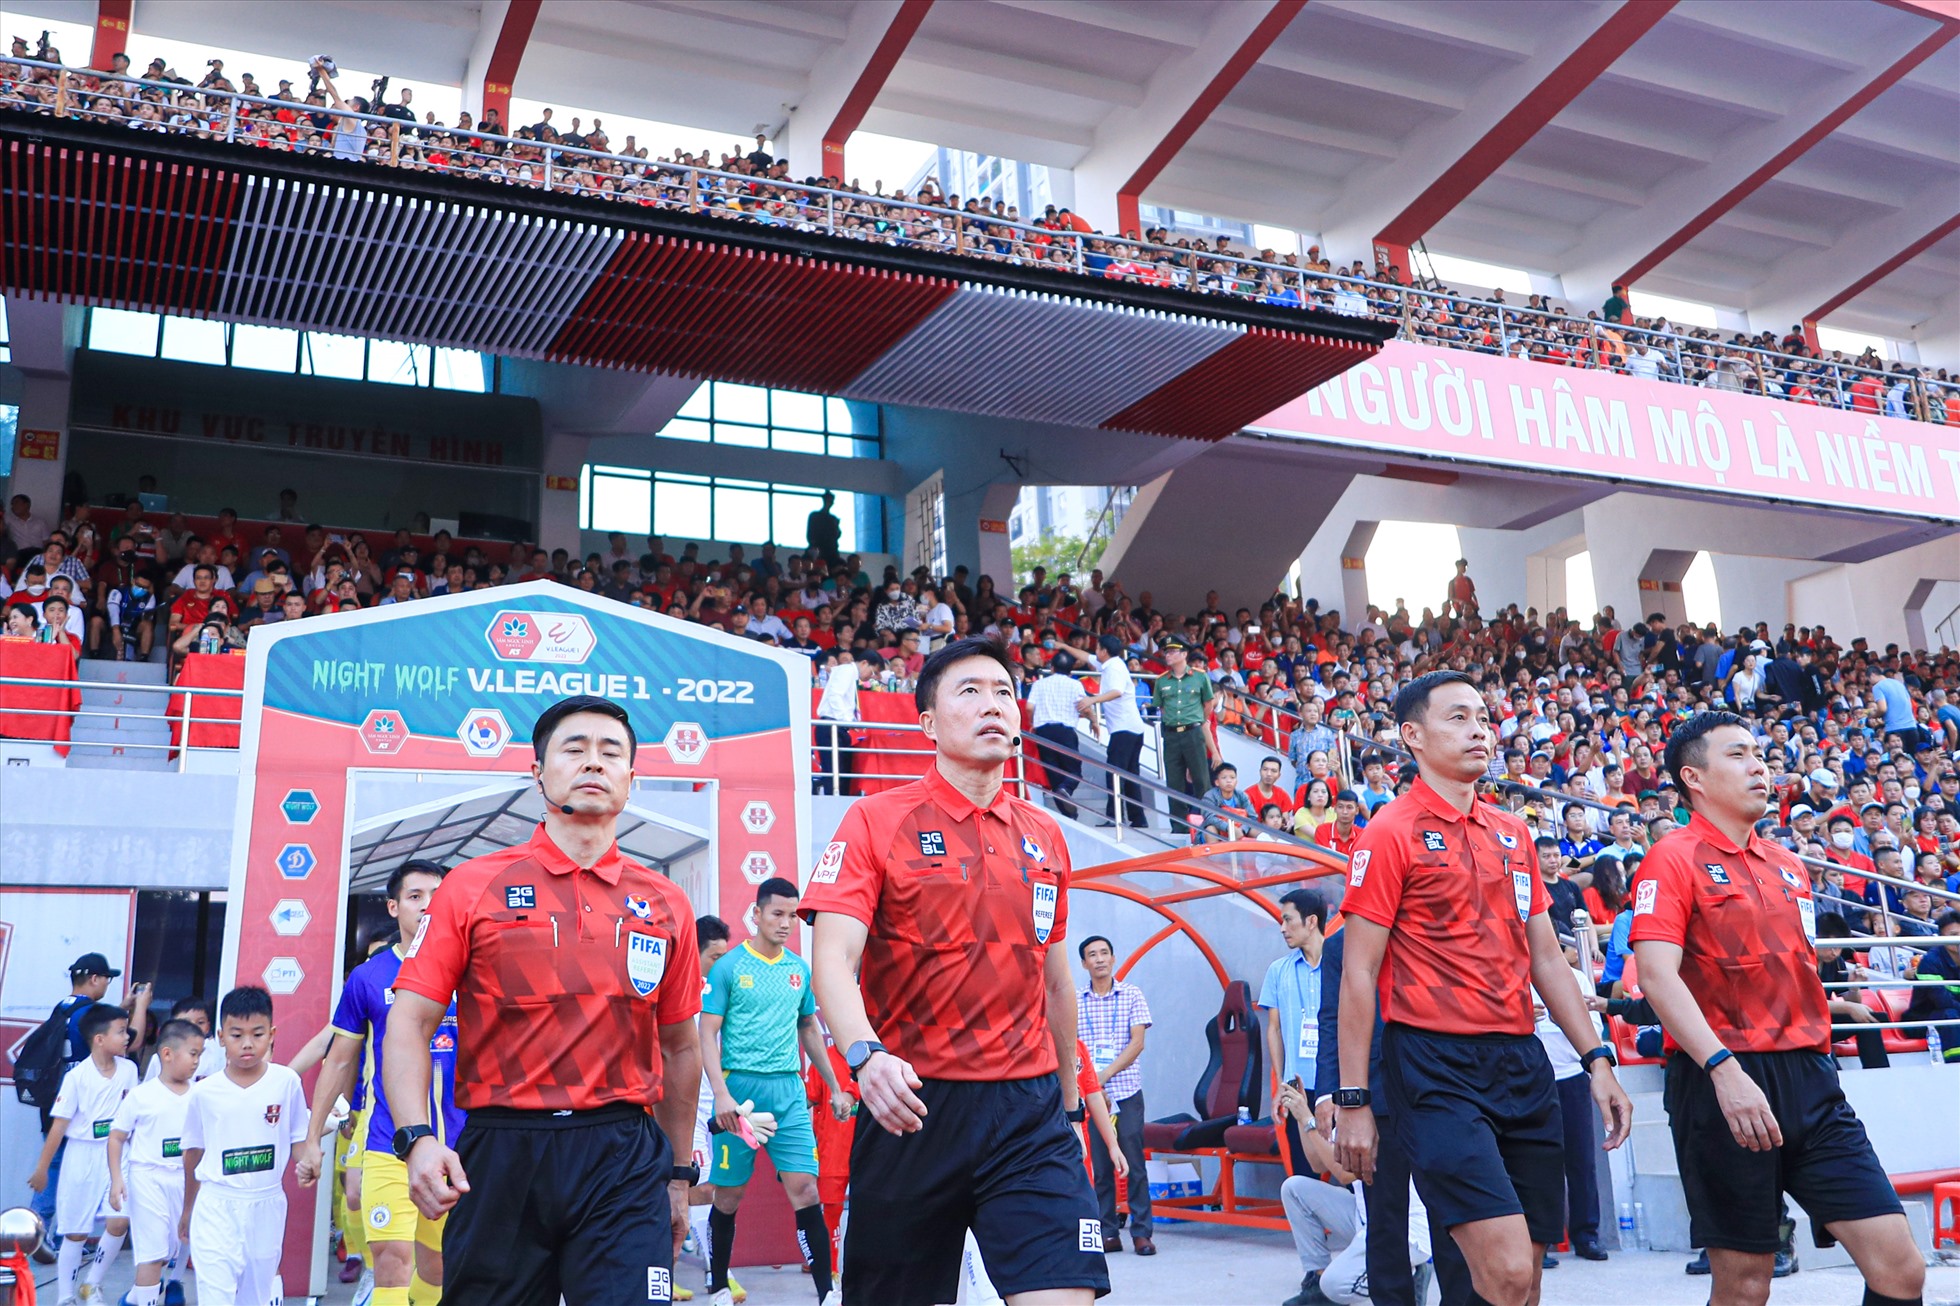 Trận đấu giữa câu lạc bộ Hải Phòng và Hà Nội diễn ra lúc 17h00 hôm nay (23.10) trên sân Lạch Tray có tính chất quyết định đến ngôi vô địch V.League 2022. Ban tổ chức đã phải sử dụng tổ trọng tài đến từ Hàn Quốc để điều khiển trận đấu này.